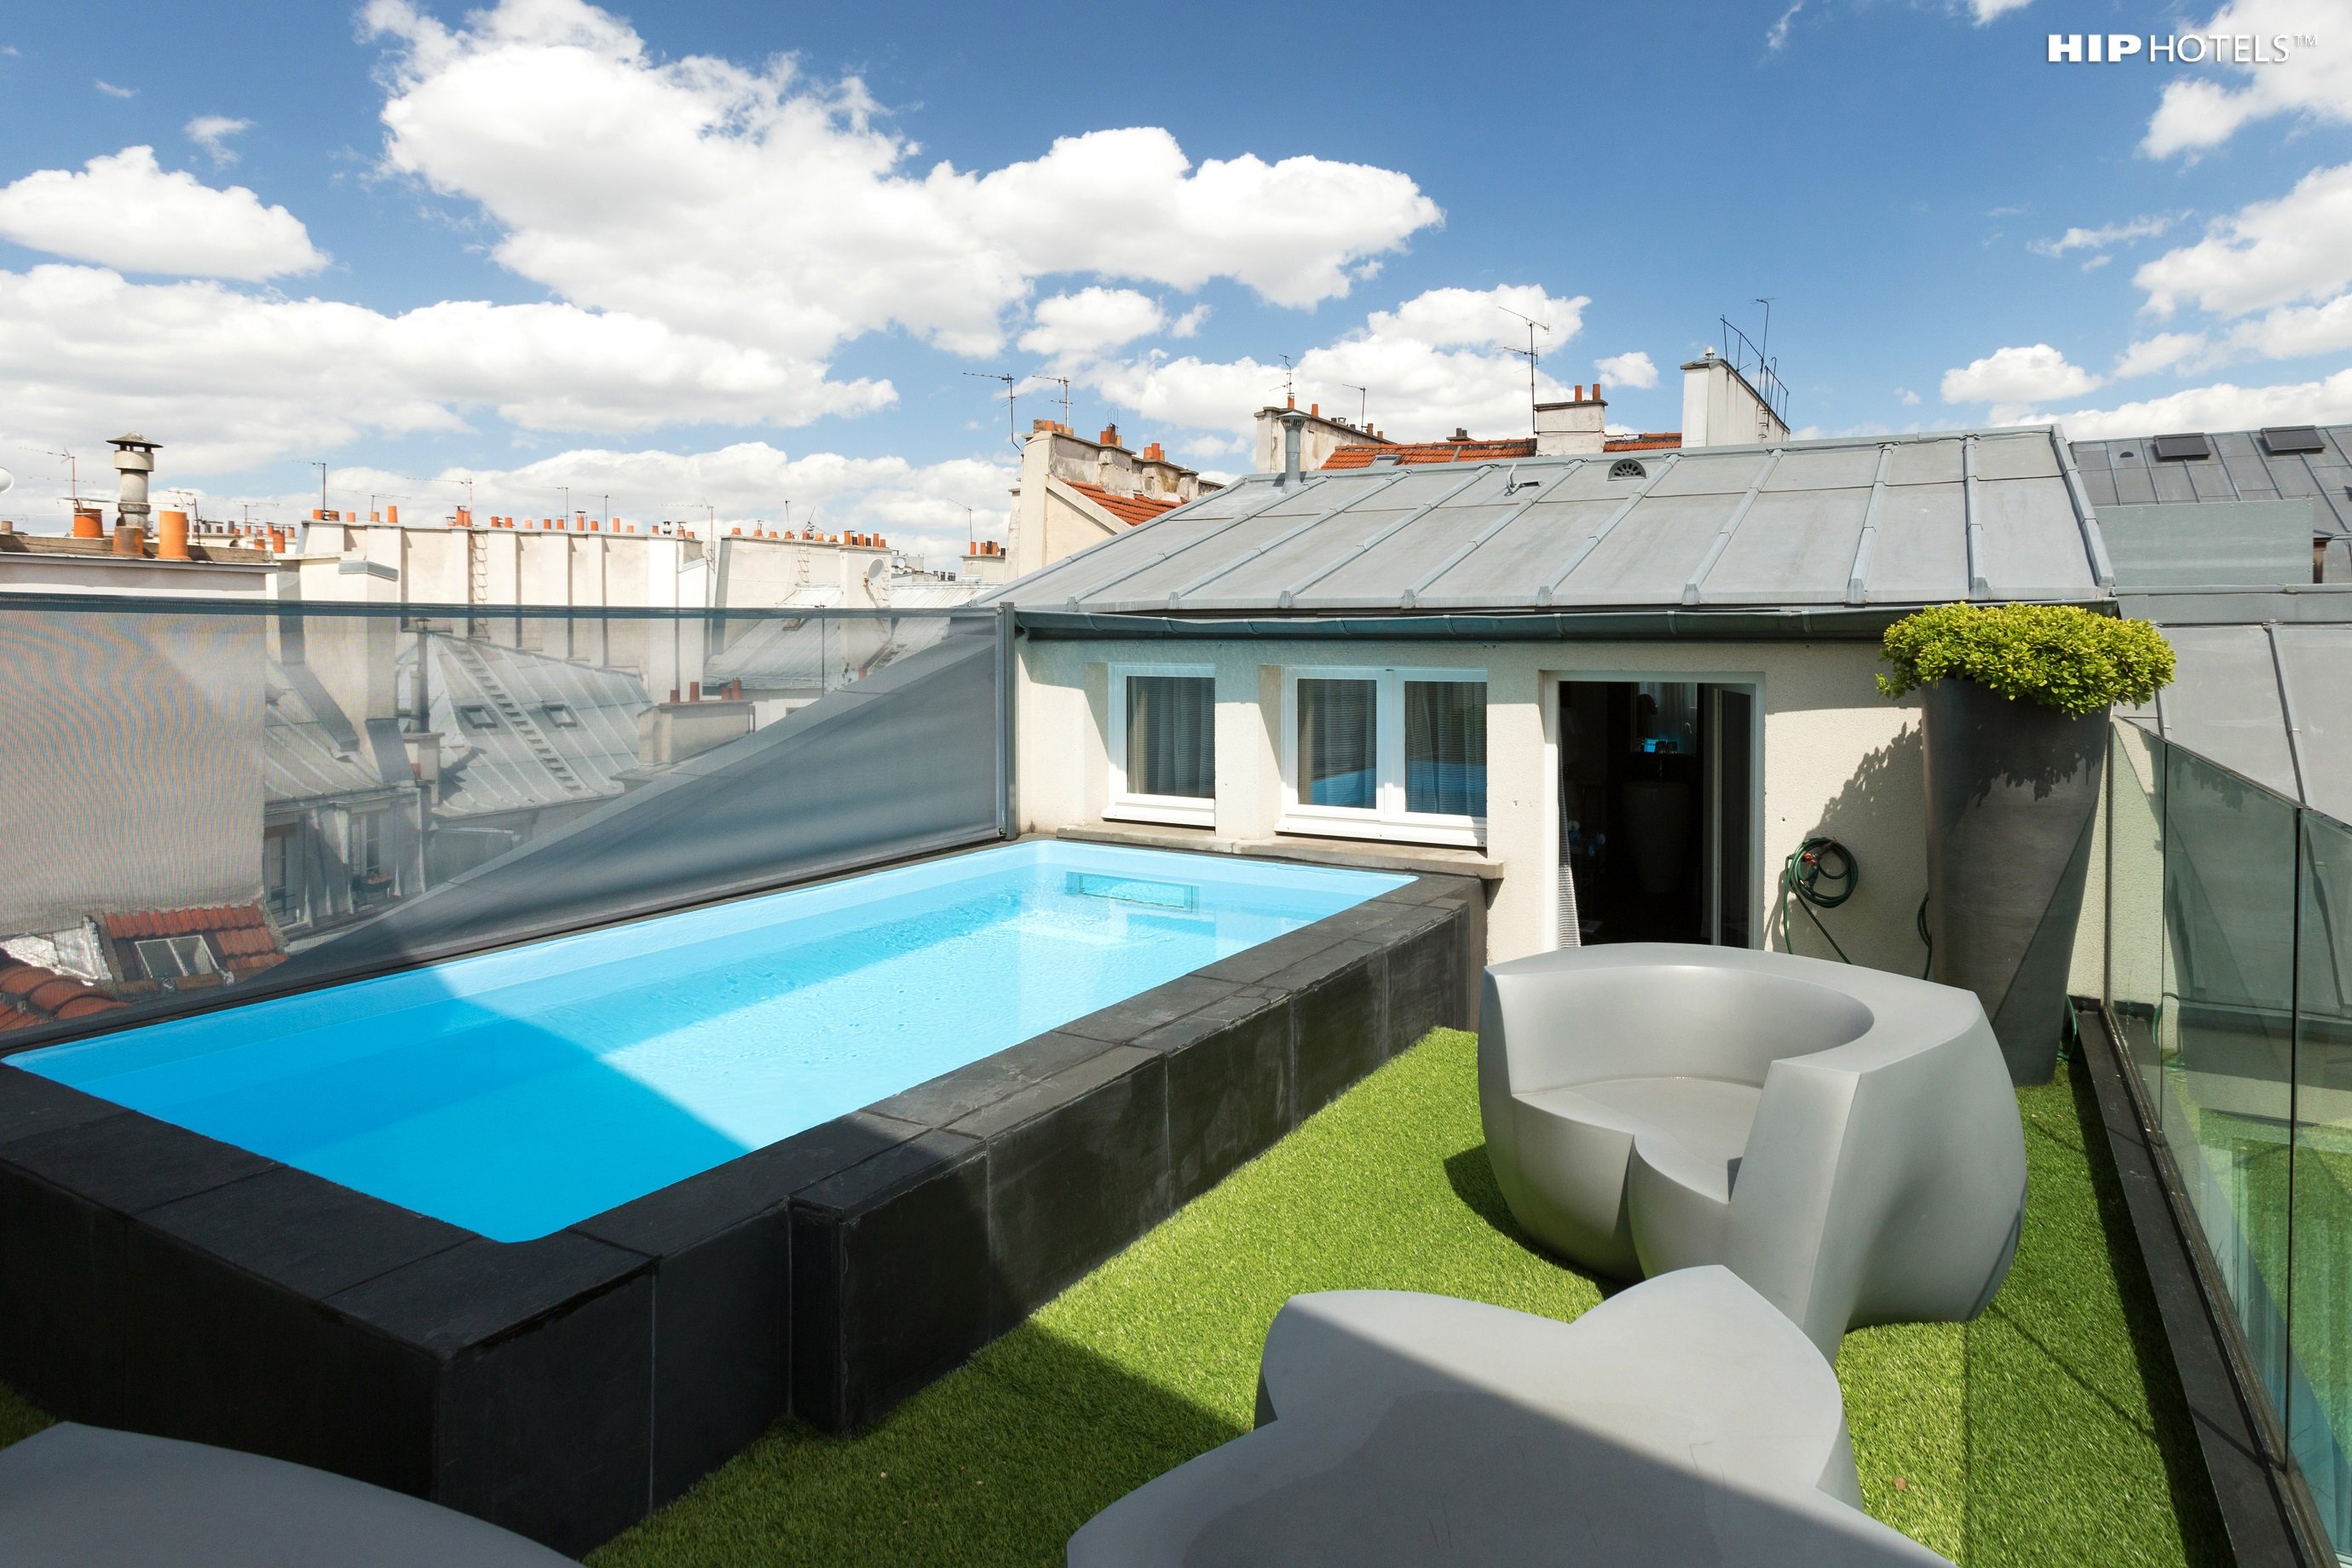 1K Paris - Pool Suite - Rooftop